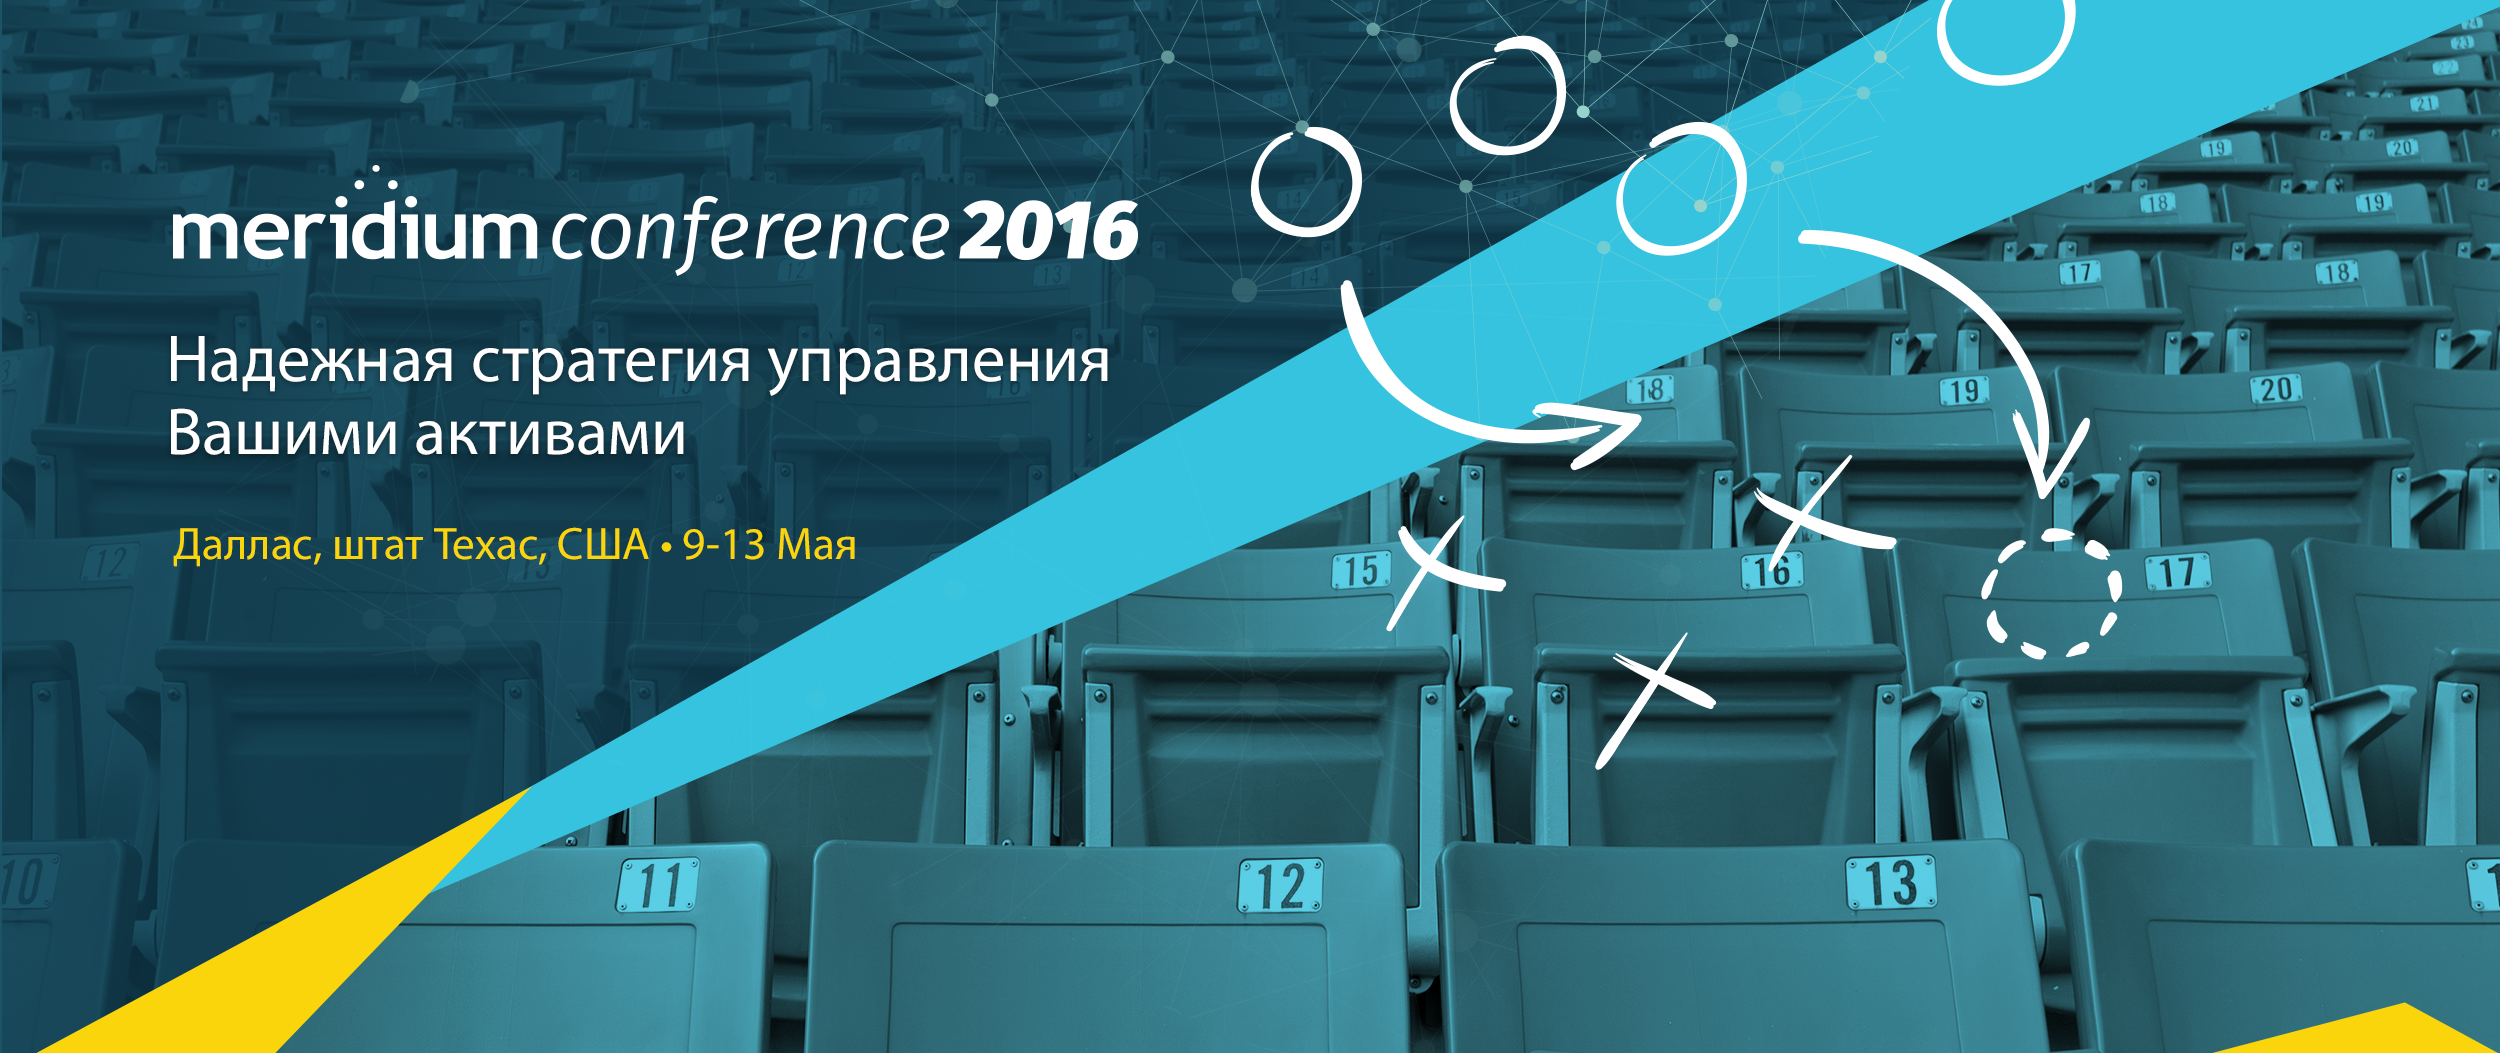 Международная конференция Meridium Conference 2016